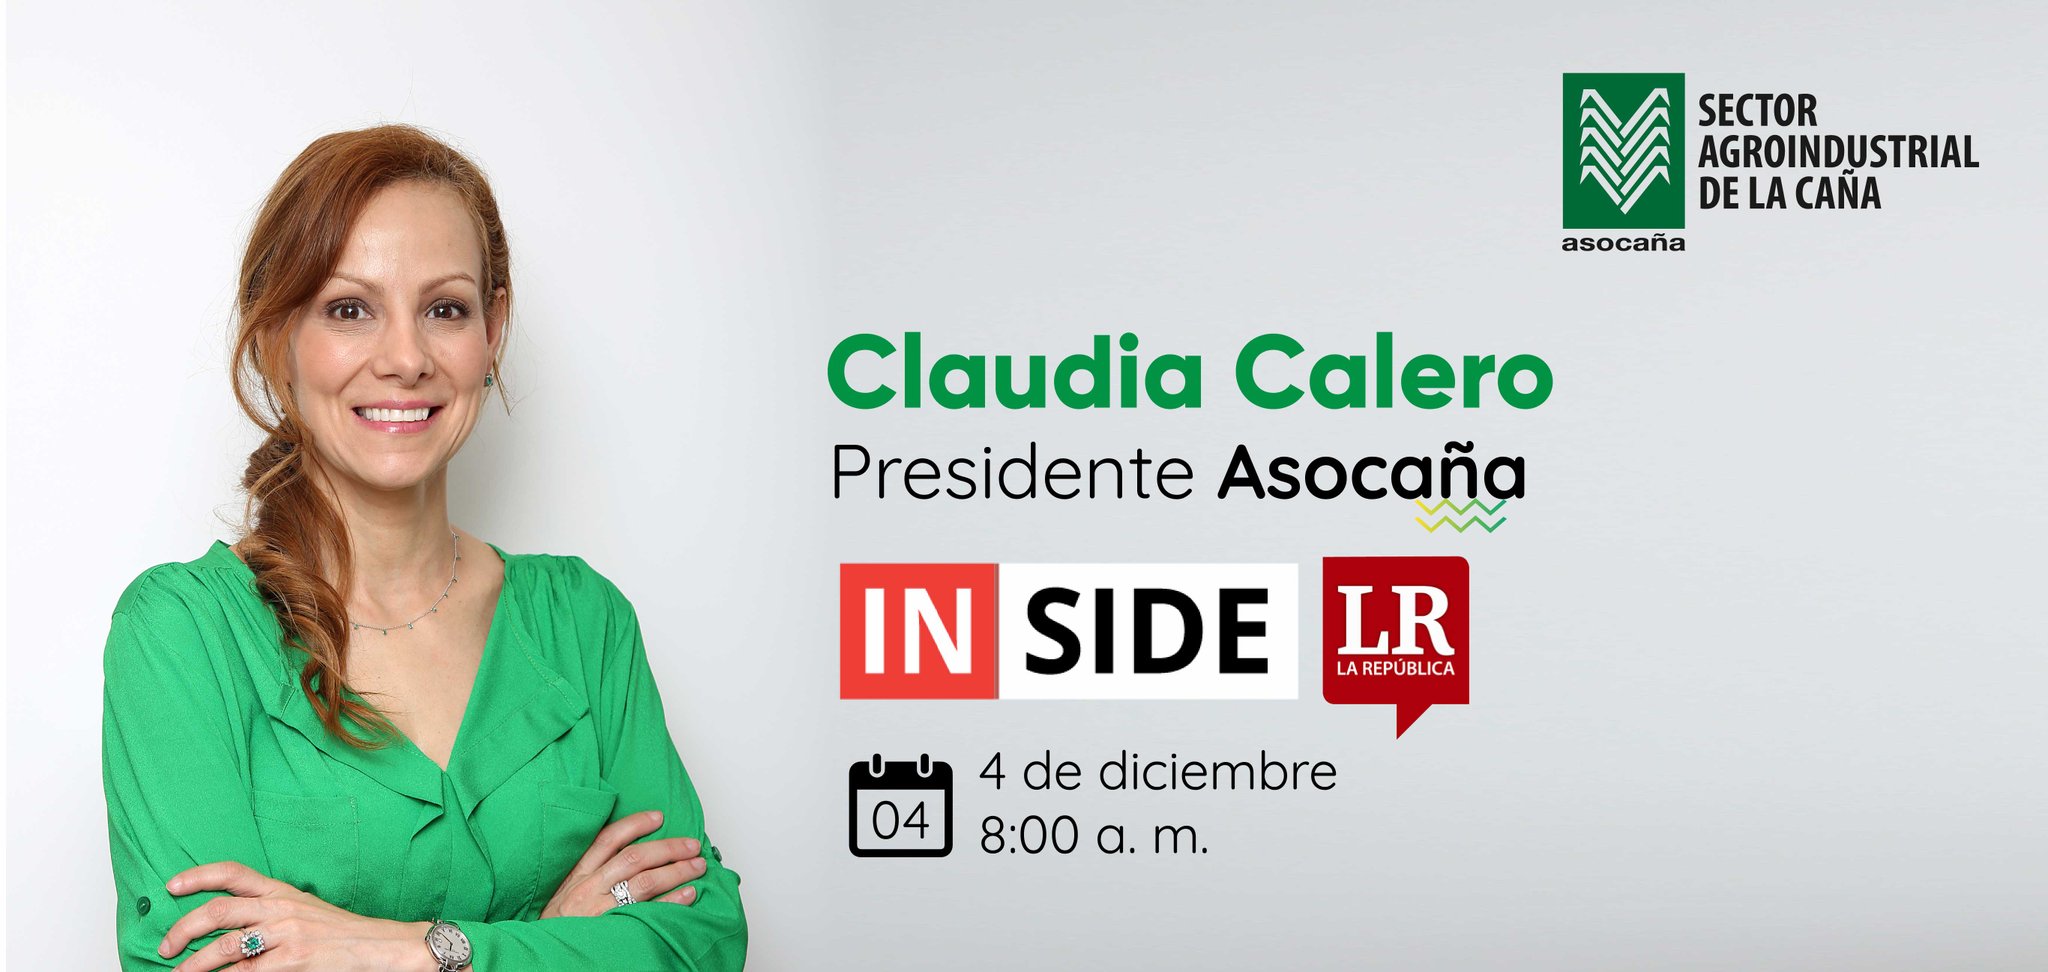 Claudia Calero on X: Los invito a conectarse mañana, desde las 8:00 a. m.,  en el Inside de @larepublica_co, donde estaré participando y contándoles  por qué en el sector agroindustrial de la